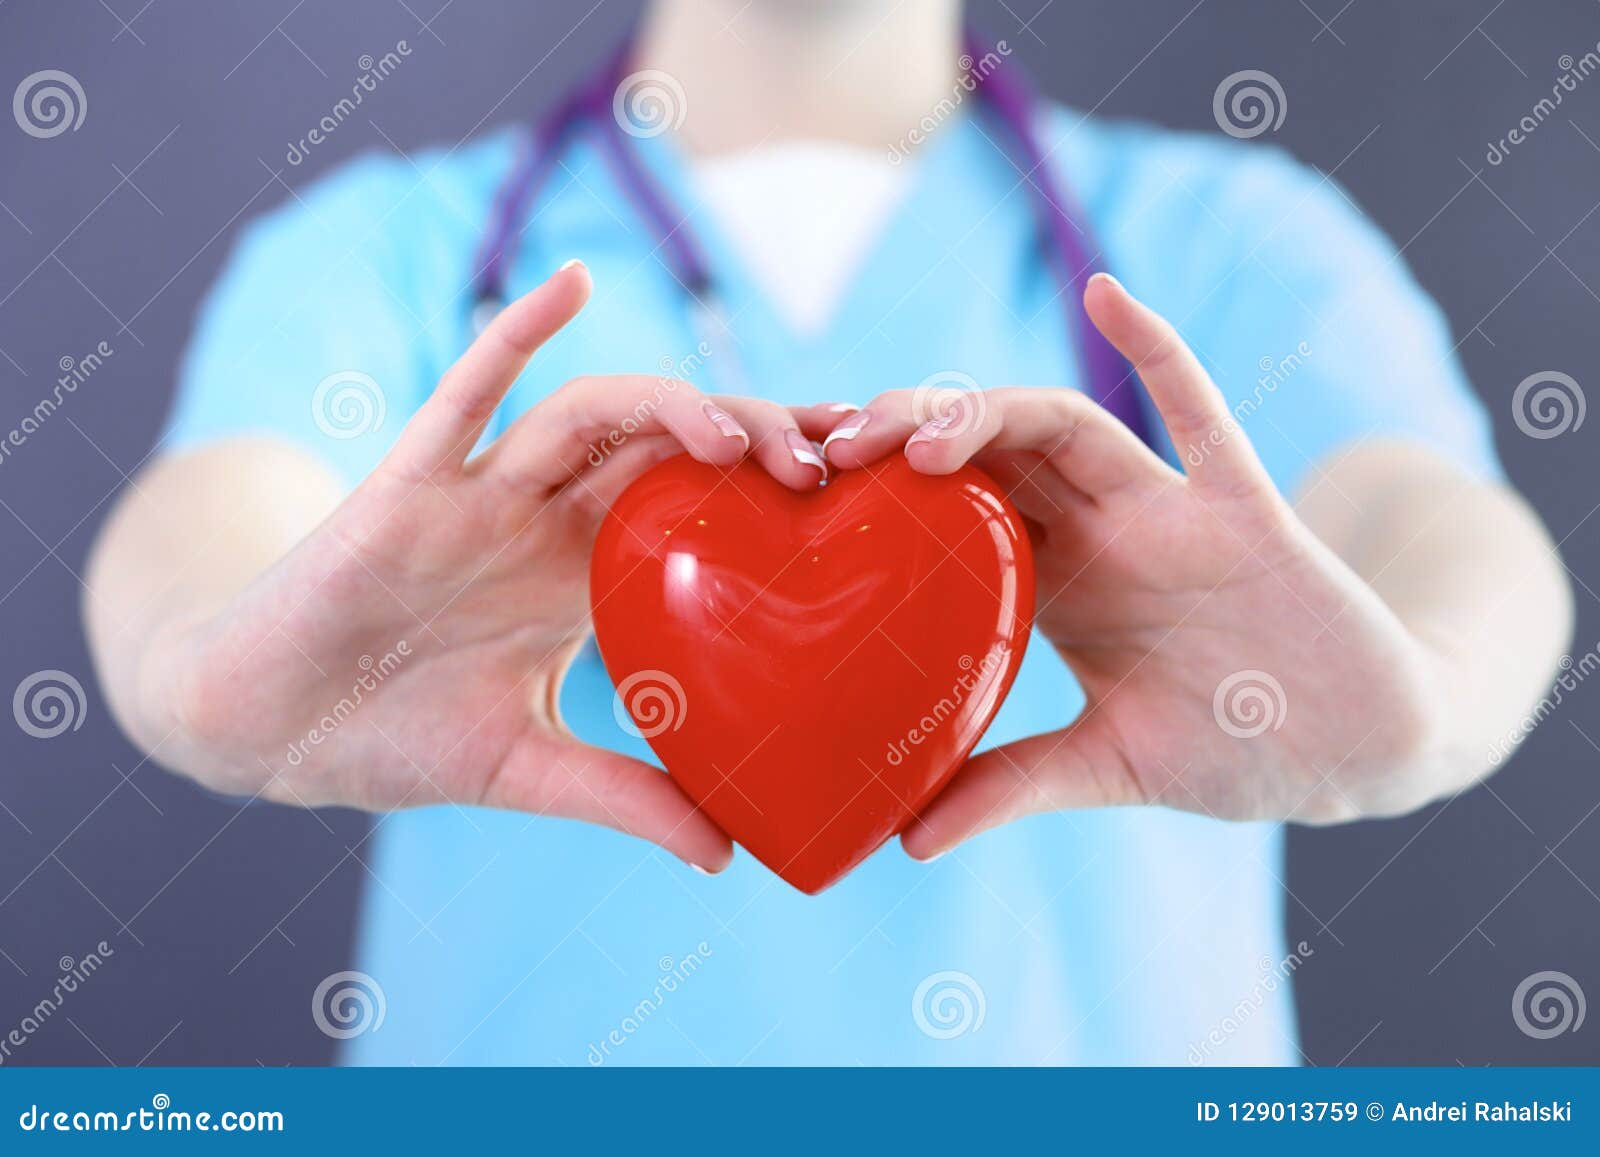 人體心臟背景圖案素材，桌布圖片免費下載 -zh.lovepik.com